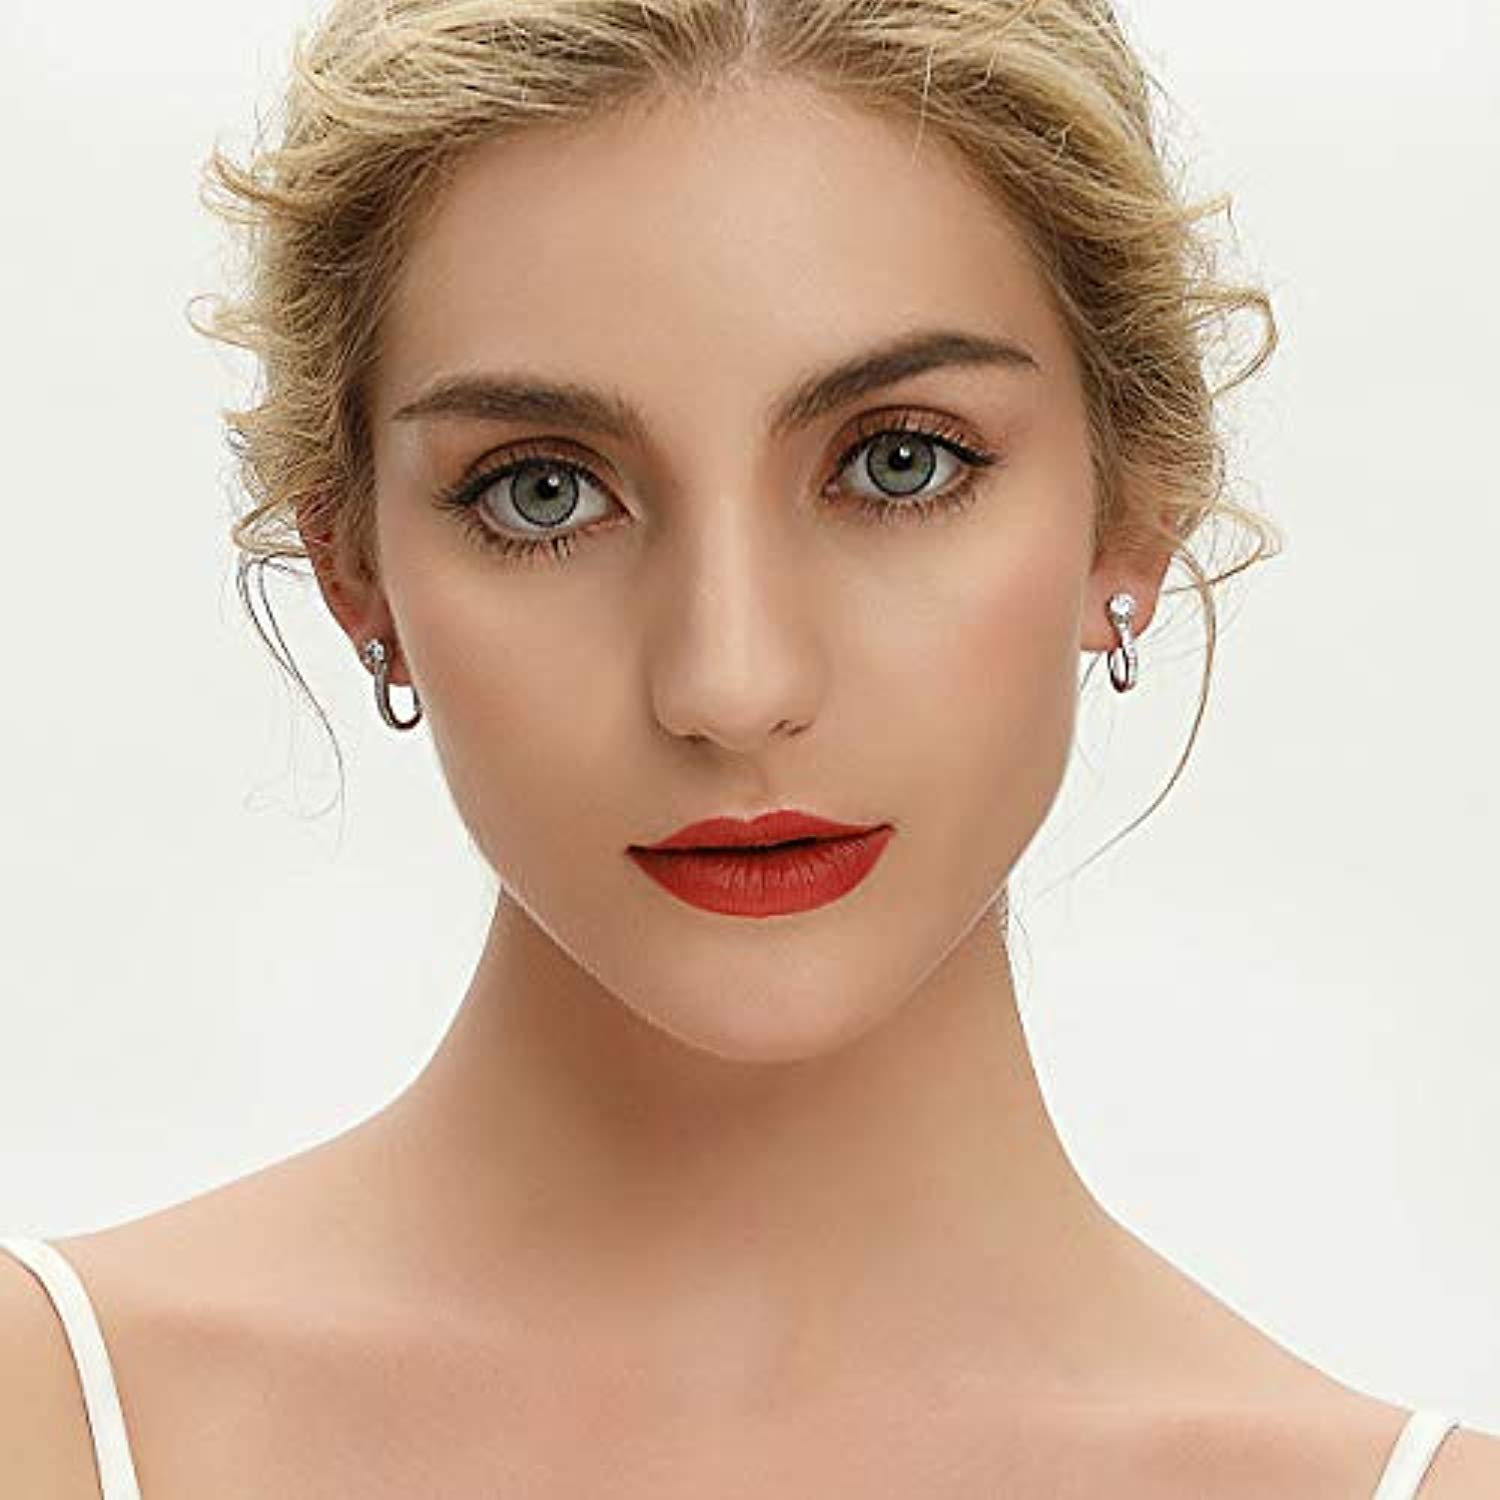 925 Sterling Silver Hoop Earrings Jewelry for Women